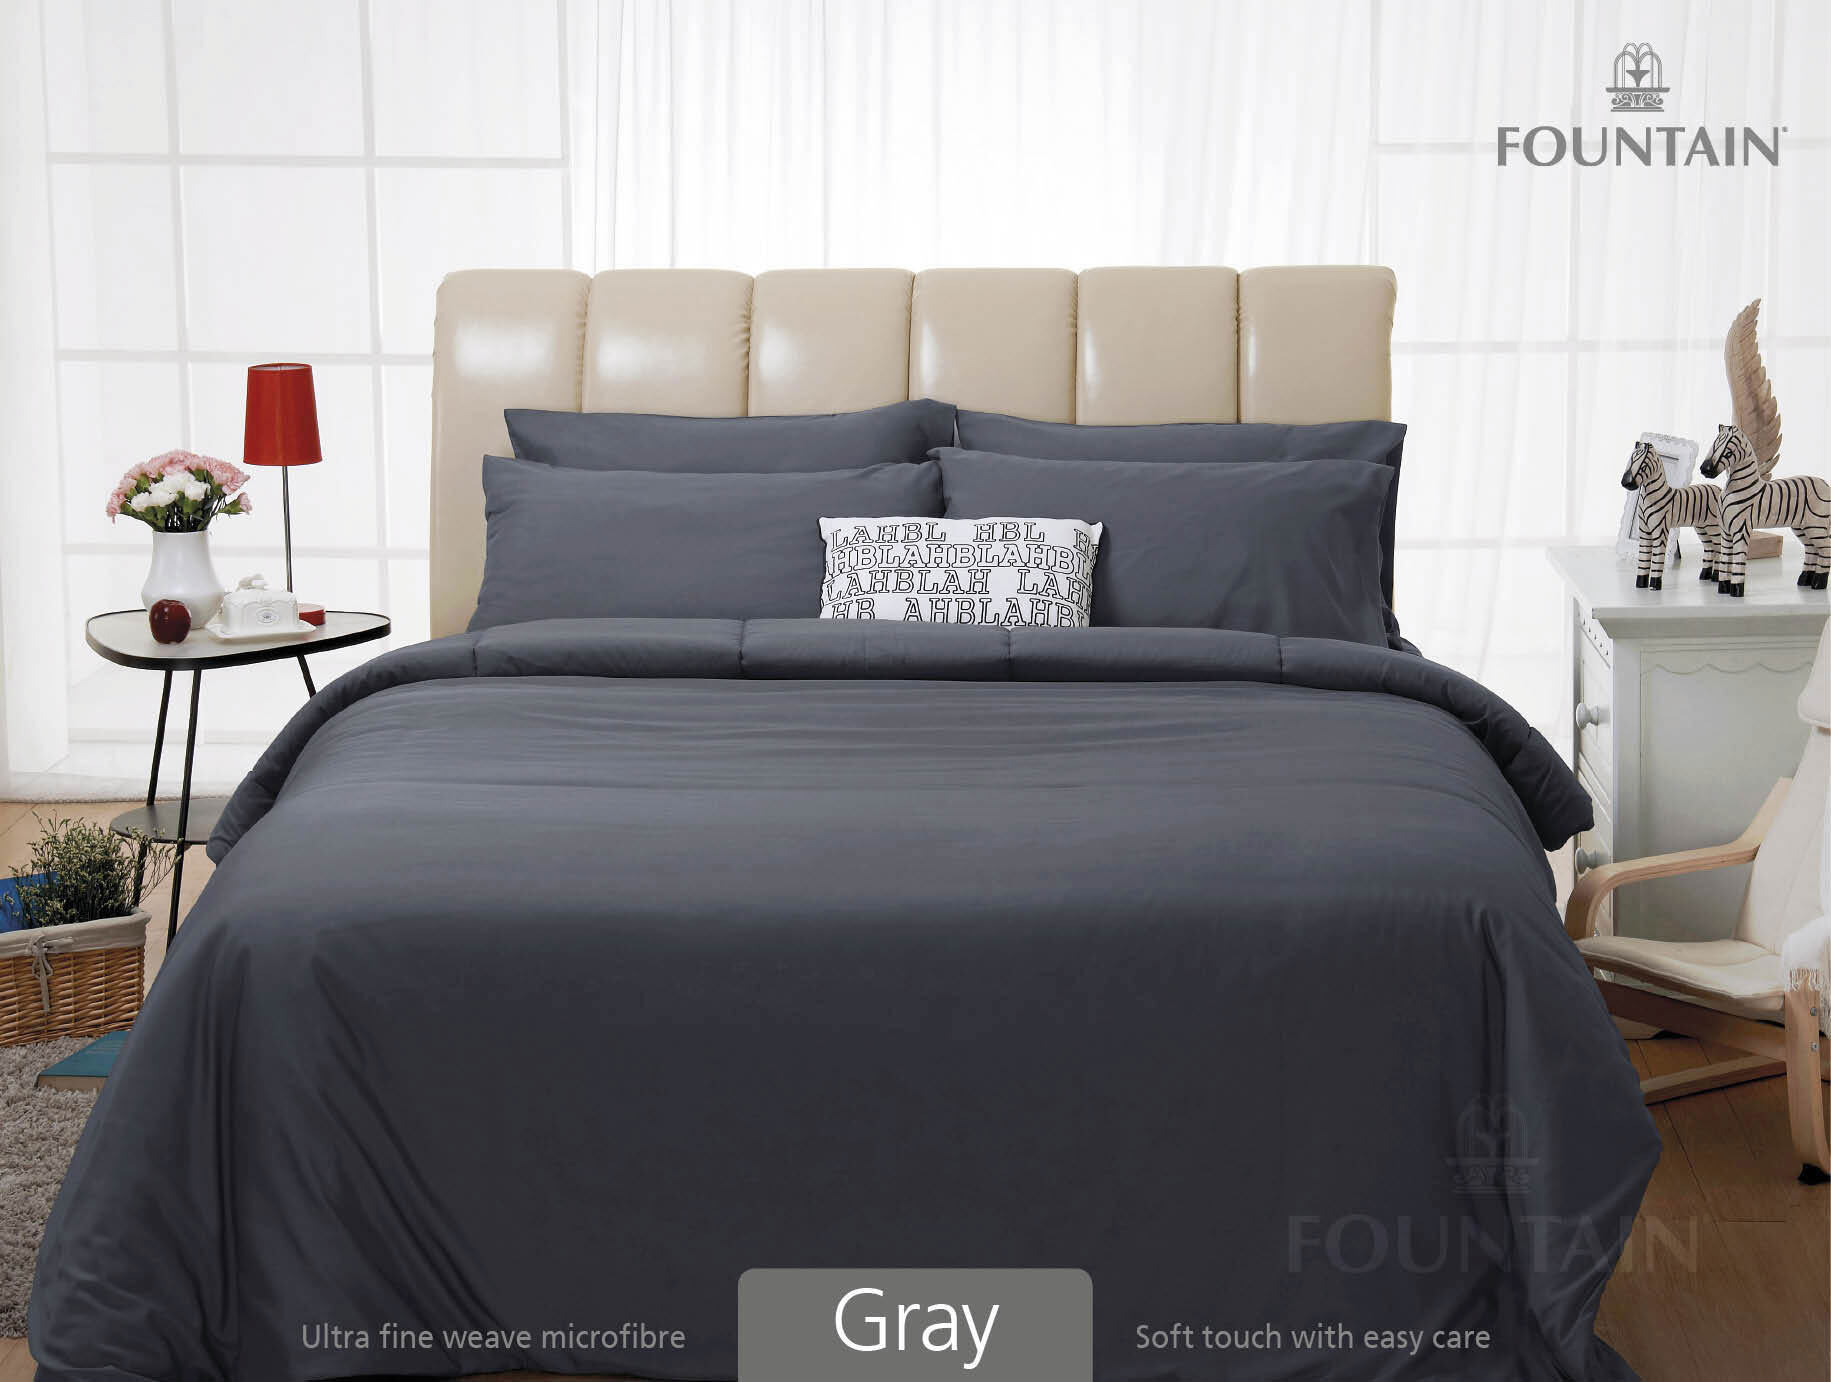 FOUNTAIN ผ้านวม + ชุดผ้าปู ผ้าปู ที่นอน แท้ 100% FTC สีพื้น เขียว Green Gray เทา ขนาด 3.5 5 6ฟุต ชุดเครื่องนอน ผ้านวม ผ้าปูที่นอน wonderful bedding  สี → Gray3ขนาดสินค้า 6 ฟุต